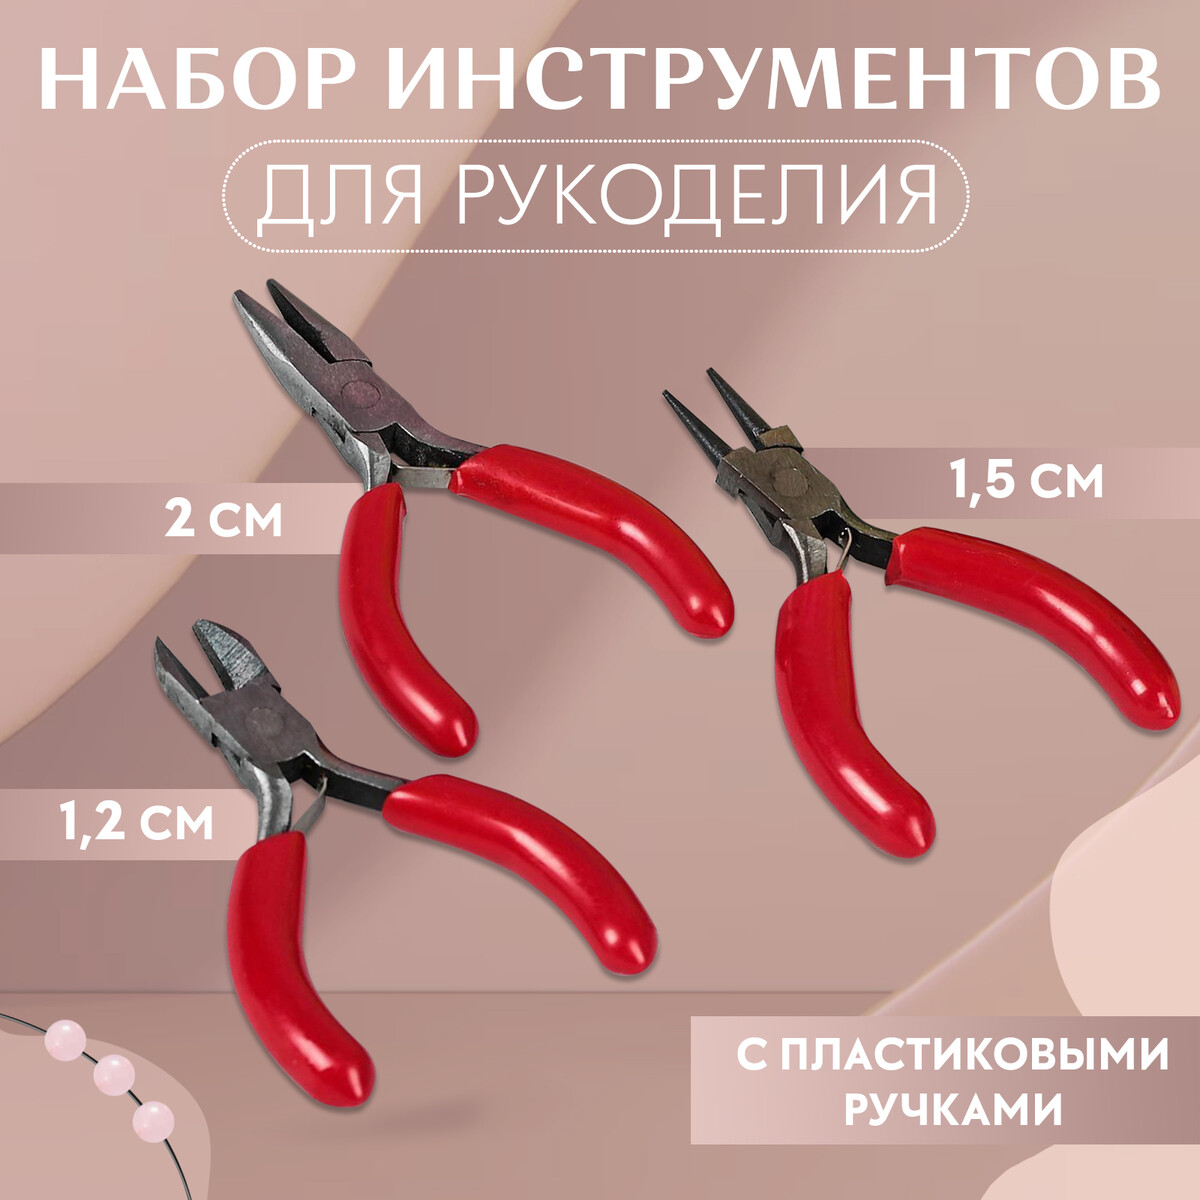 Набор инструментов для рукоделия: бокорезы - 7,5 см, круглогубцы - 8 см, тонкогубцы - 8 см, цвет серебряный/красный тонкогубцы 180 мм bartex стандарт 913017